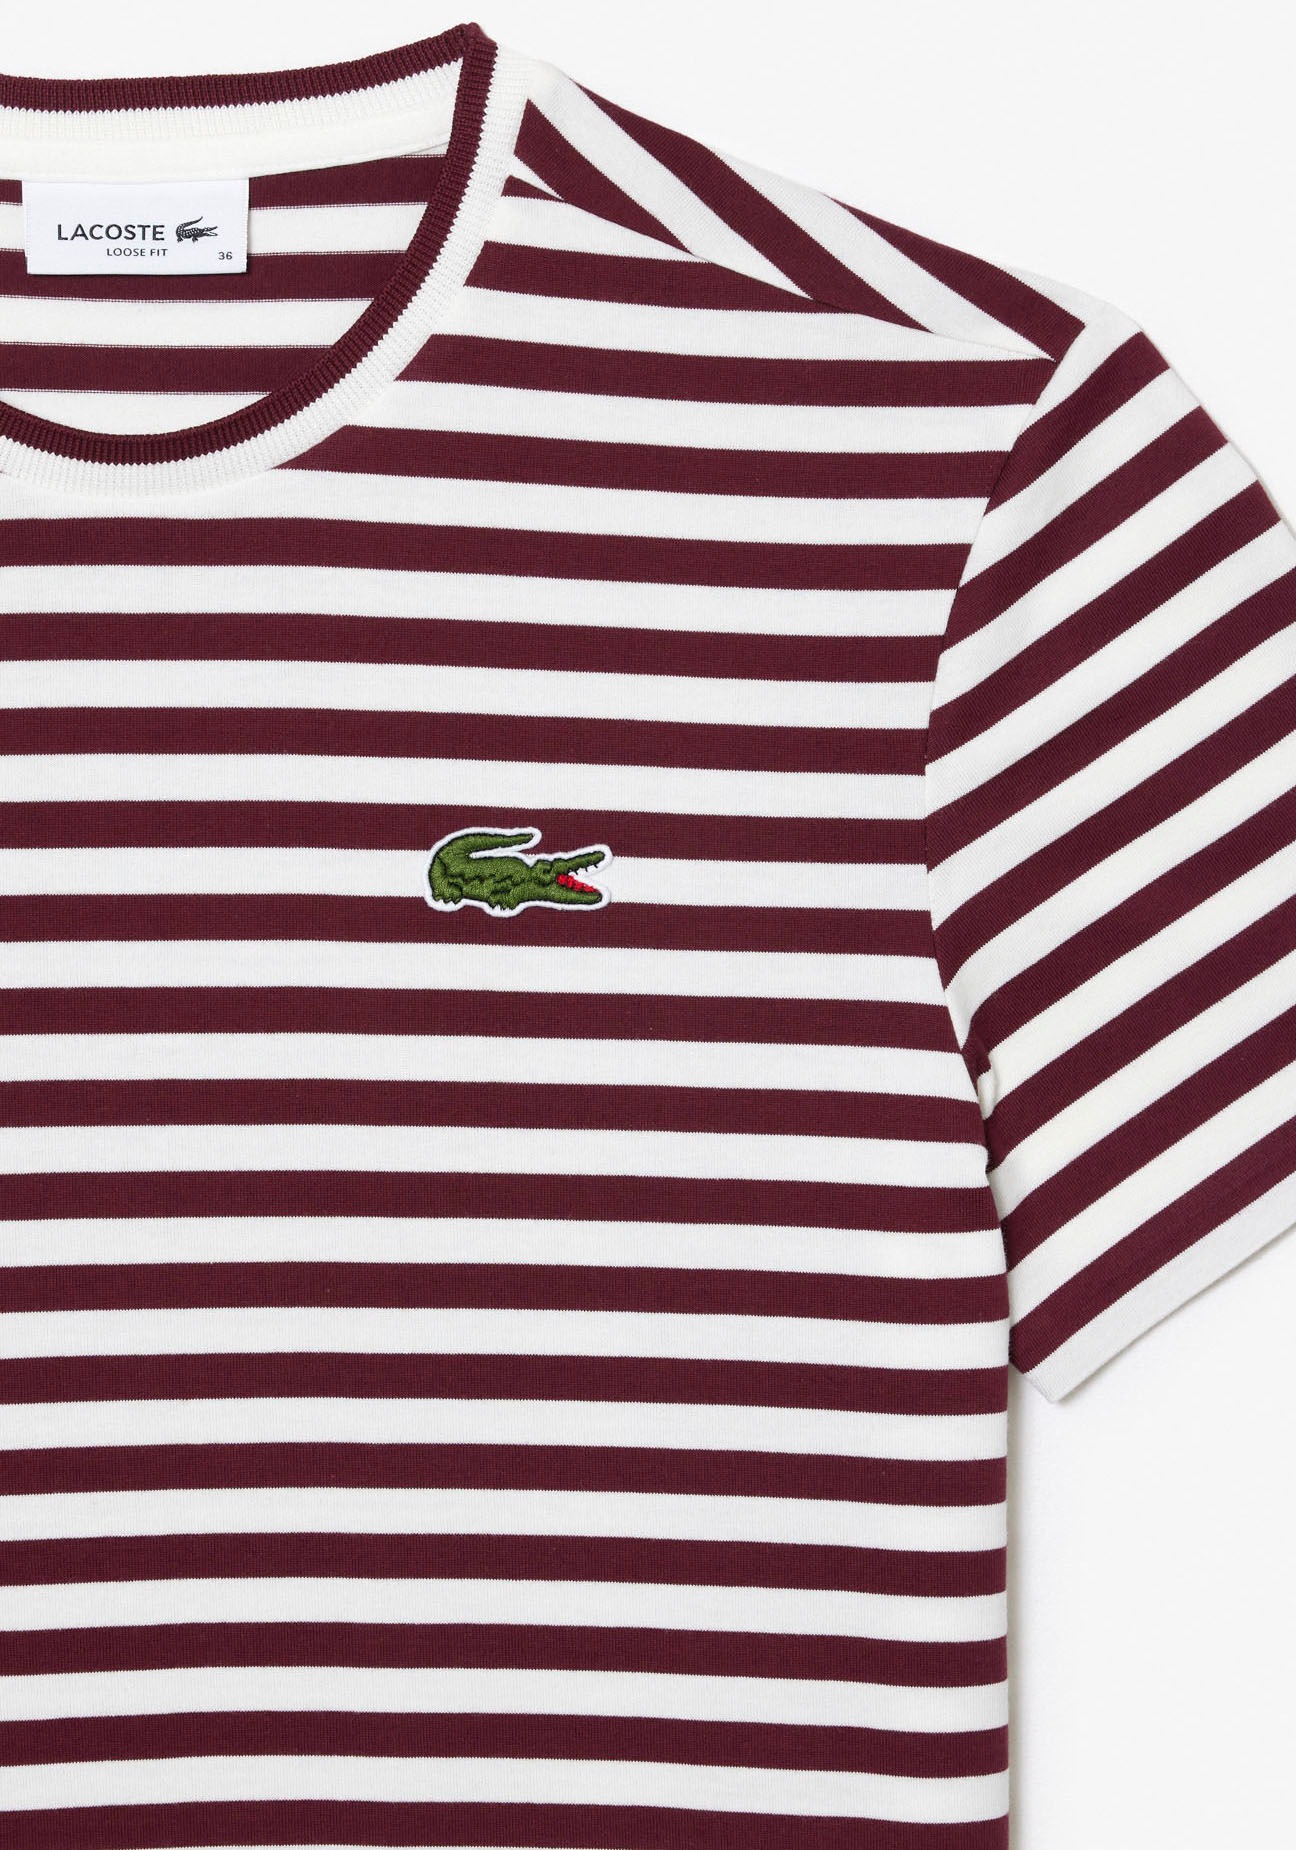 T-Shirt, Stickerei Lacoste-Krokodil mit kaufen OTTO bei Lacoste klassischer